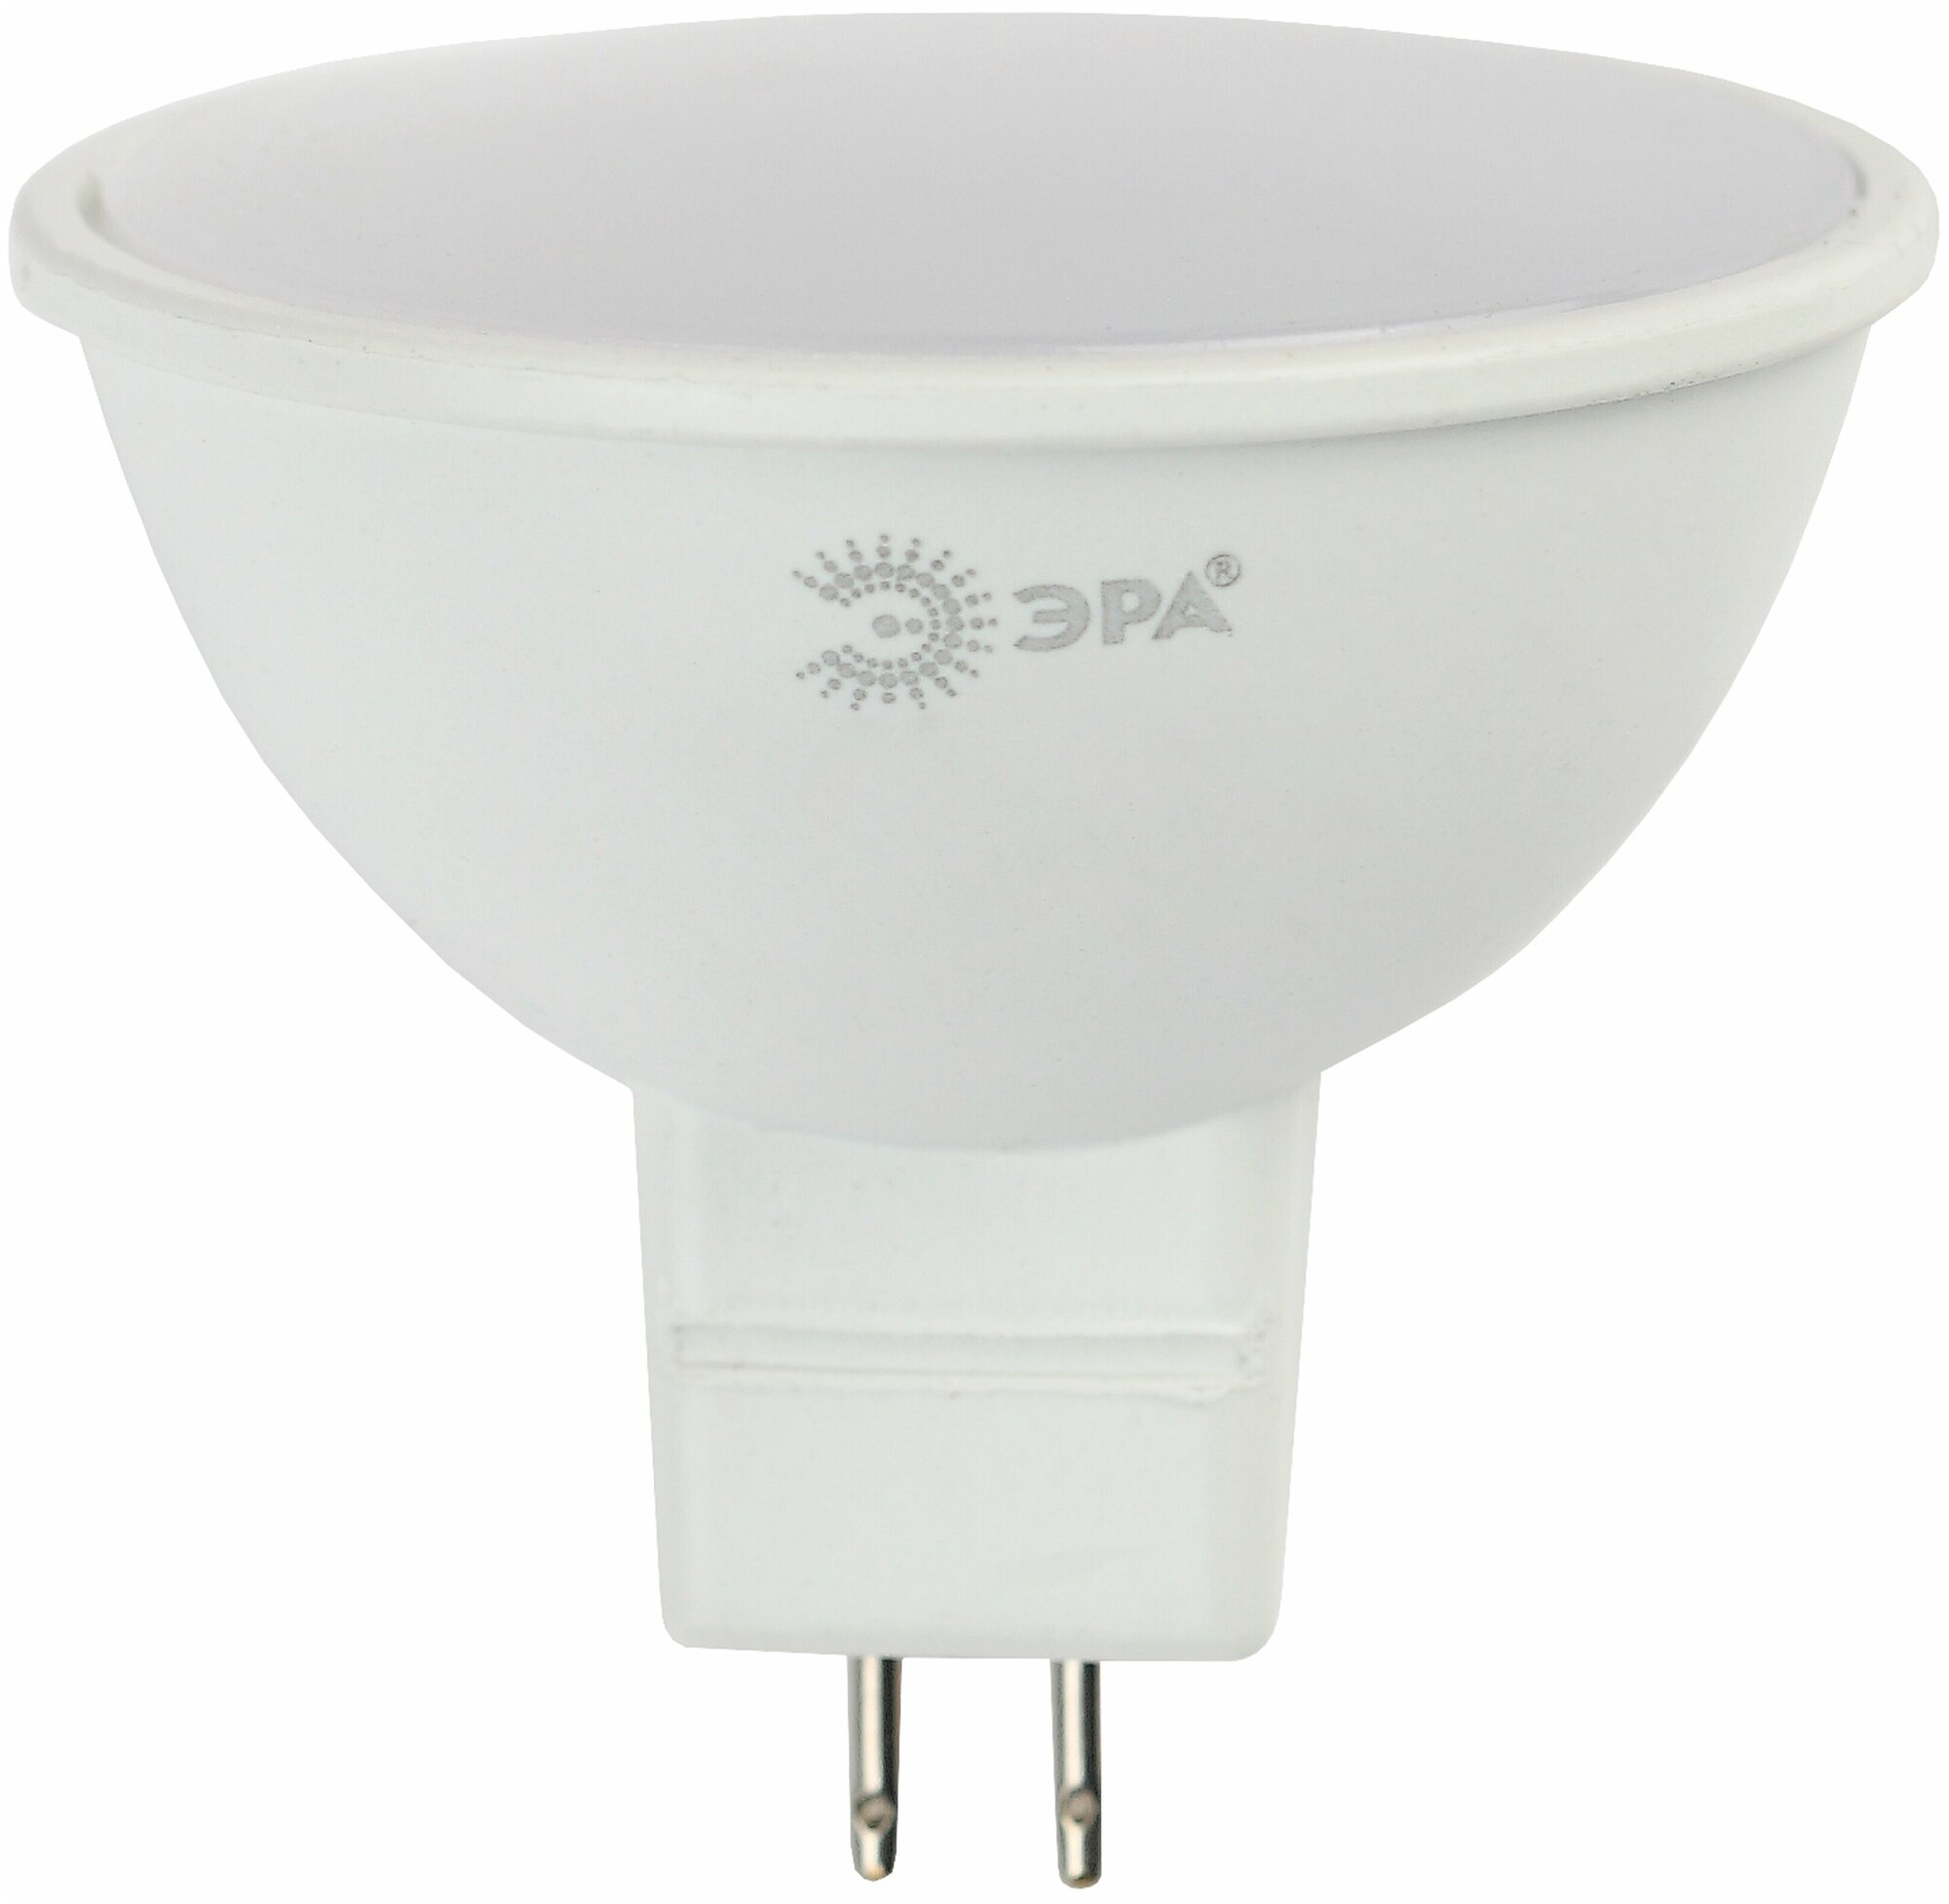 Лампочка ЭРА LED MR16-8W-12V-860-GU5.3, Холодный белый свет, 8 Вт, Светодиодная, 1 шт.